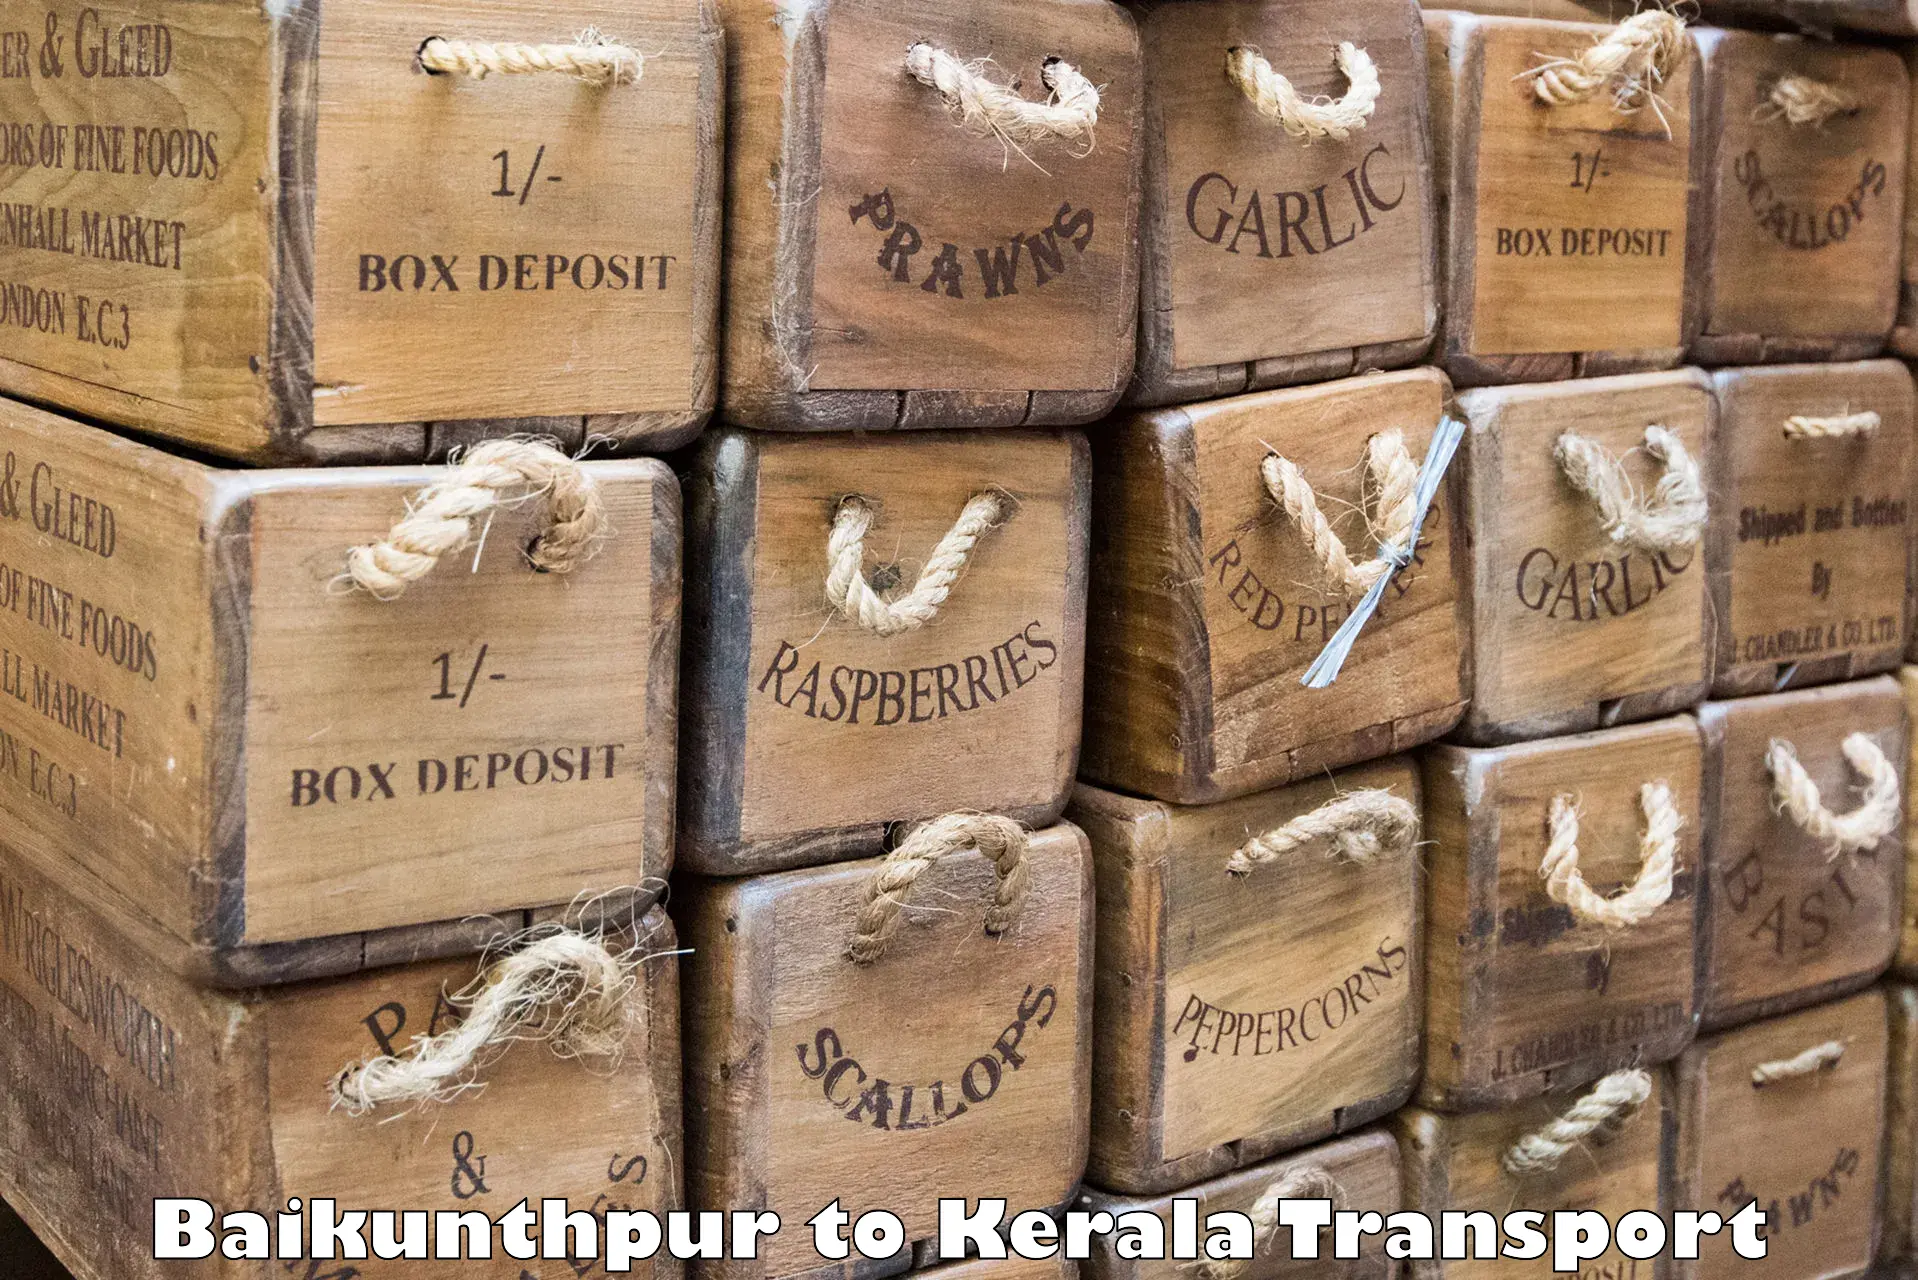 Container transportation services Baikunthpur to Arimbur